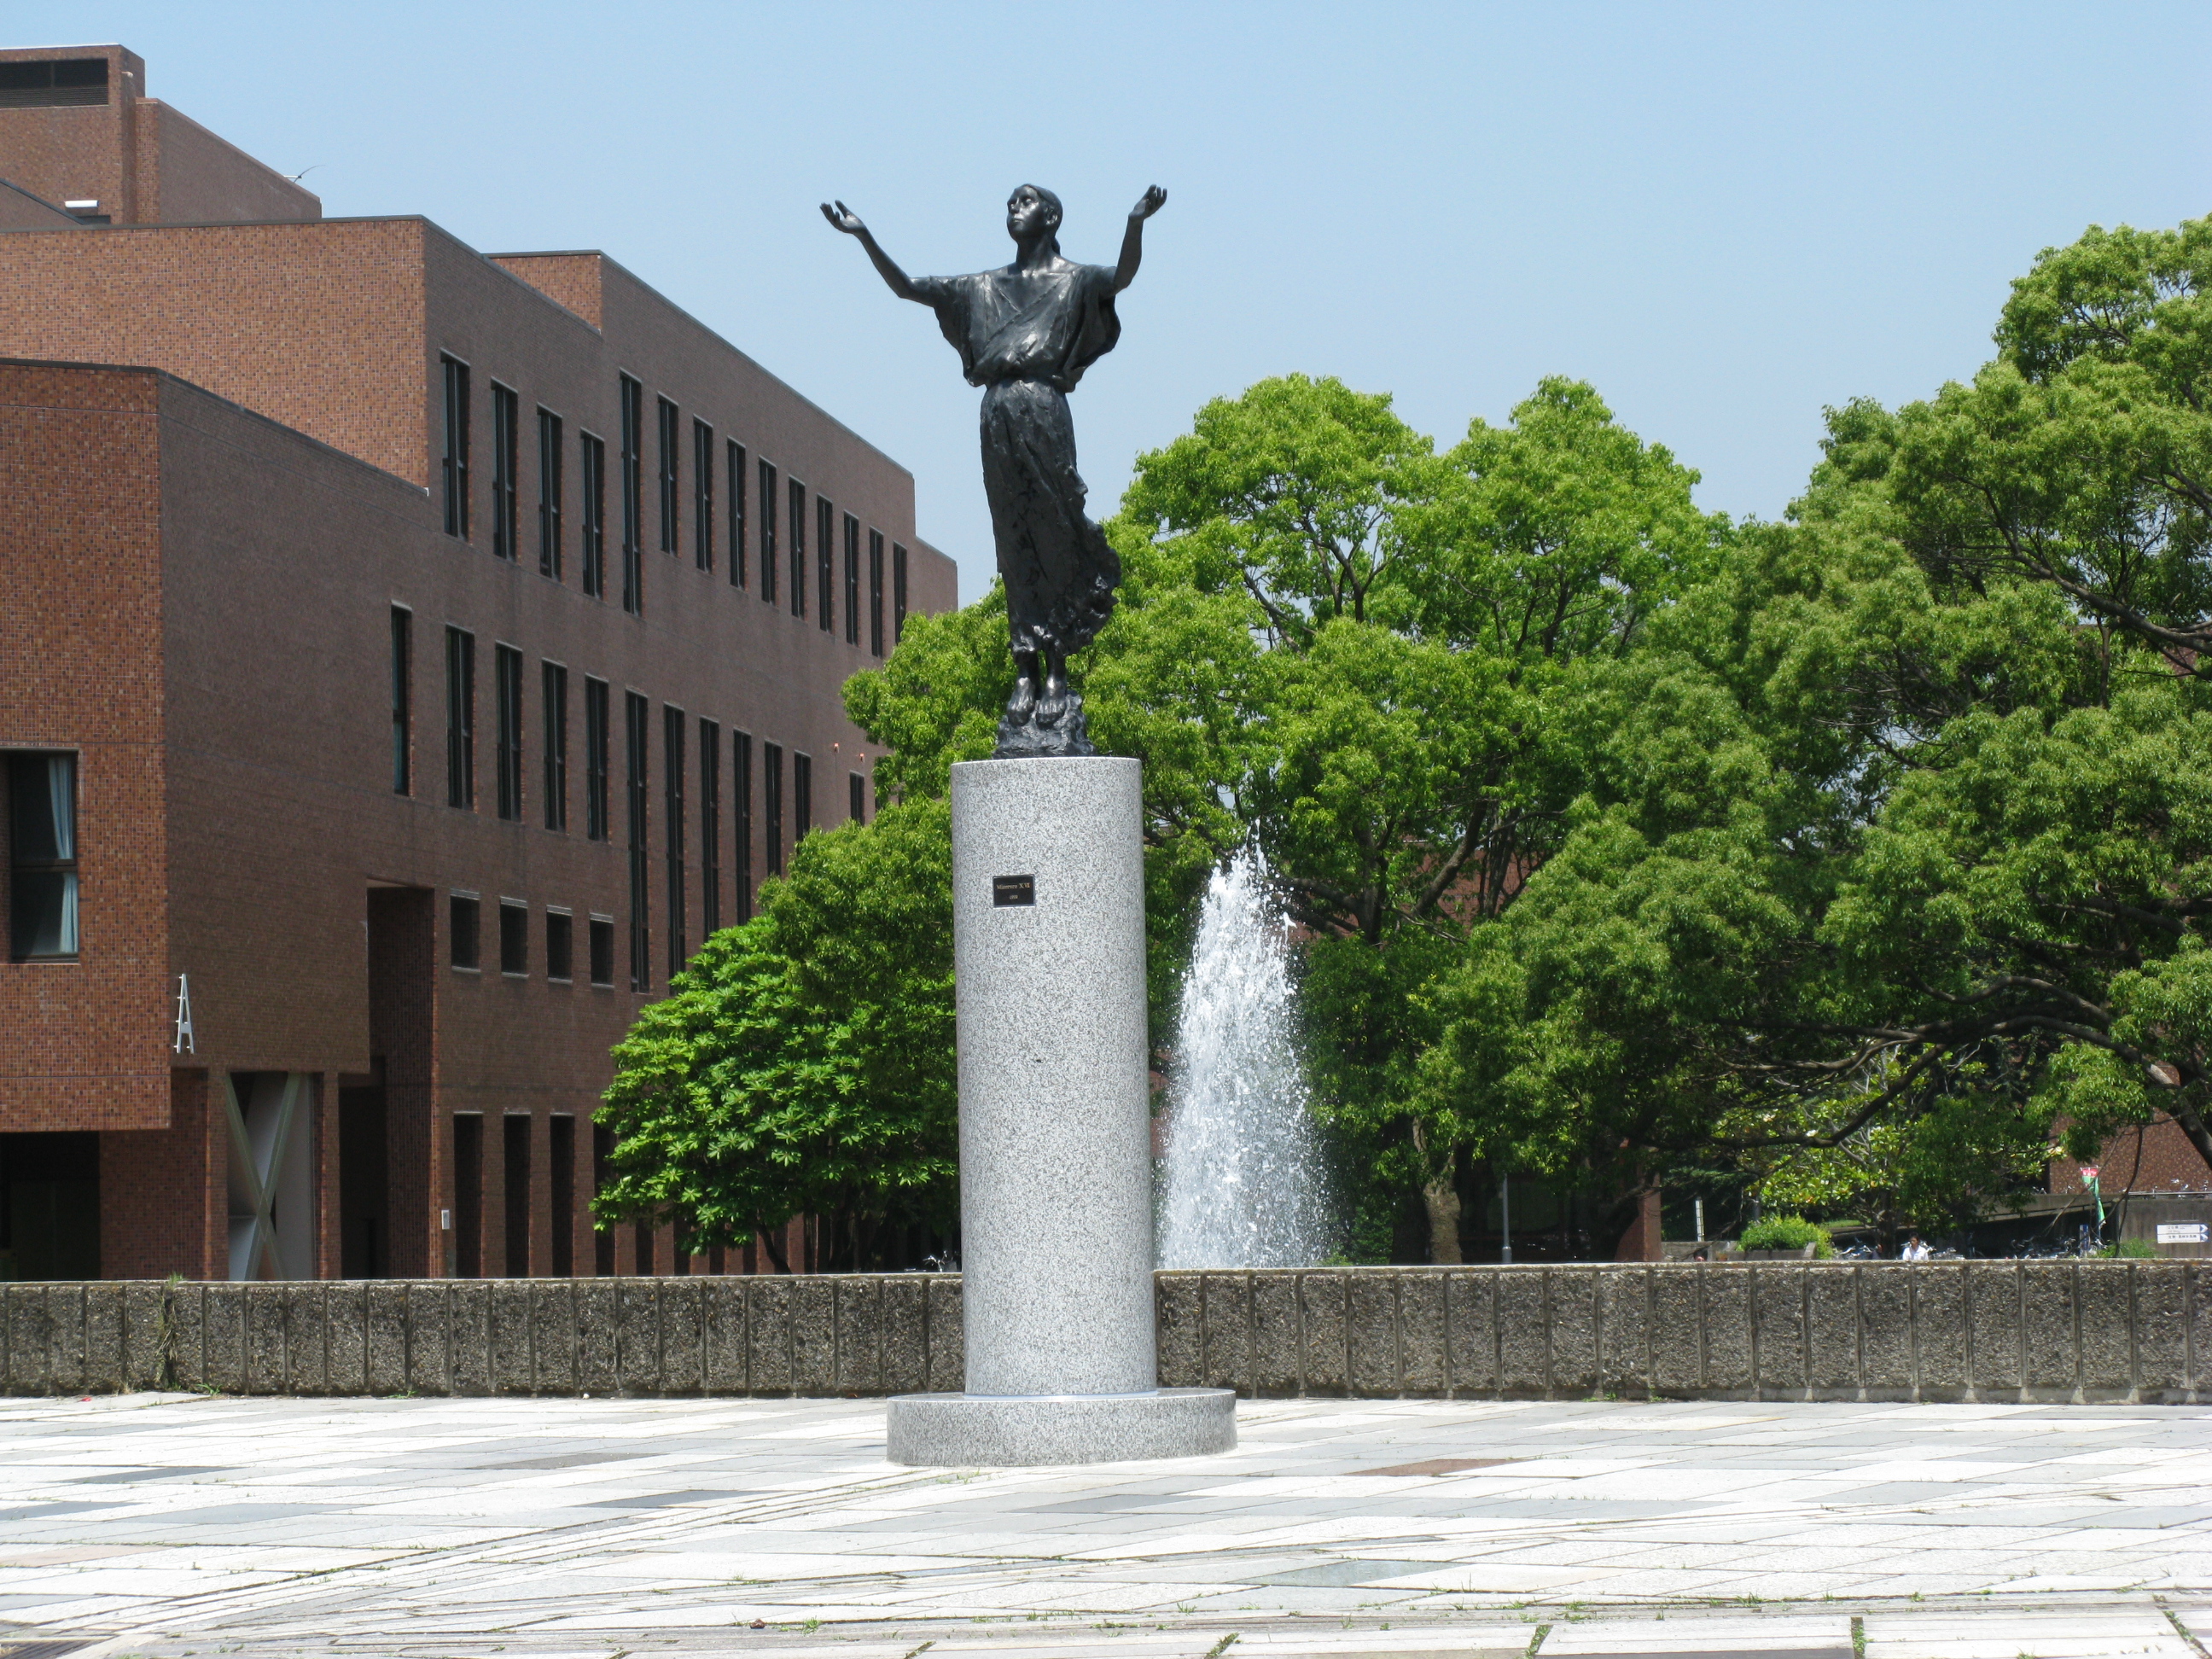 筑波大學